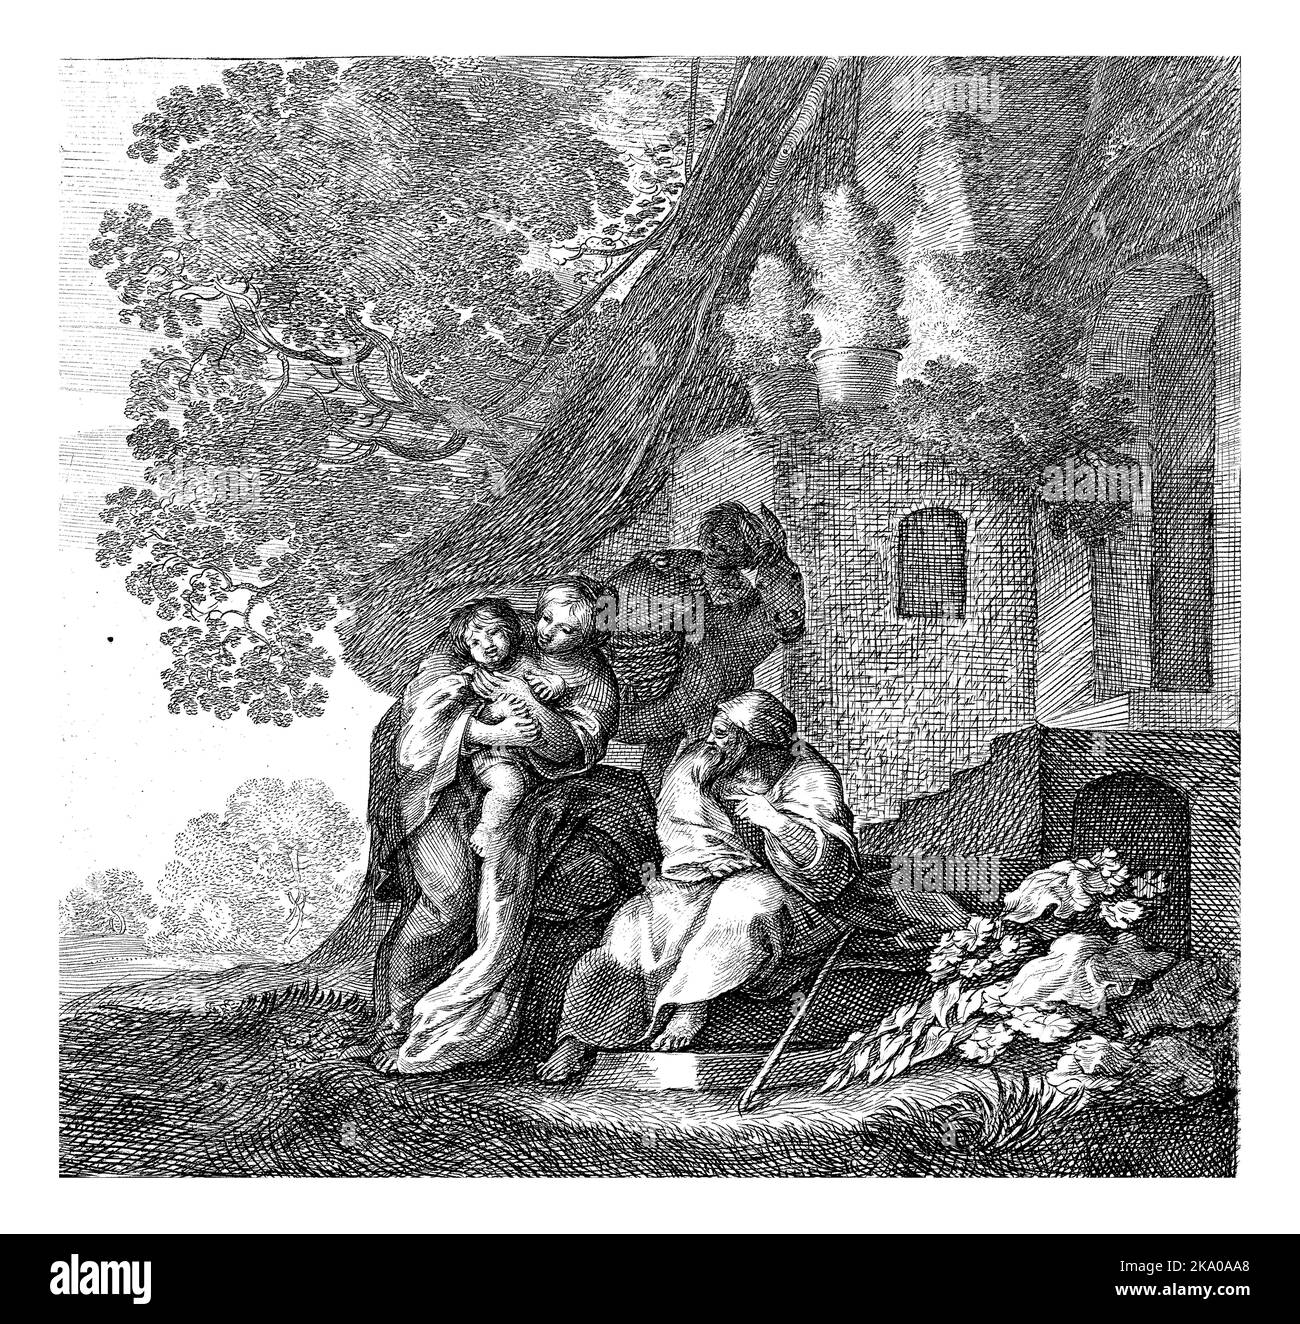 Marie se tient devant une maison de chaume avec l'enfant Christ sur son bras. À côté d'elle, Joseph est assis sur un escalier en pierre. Banque D'Images